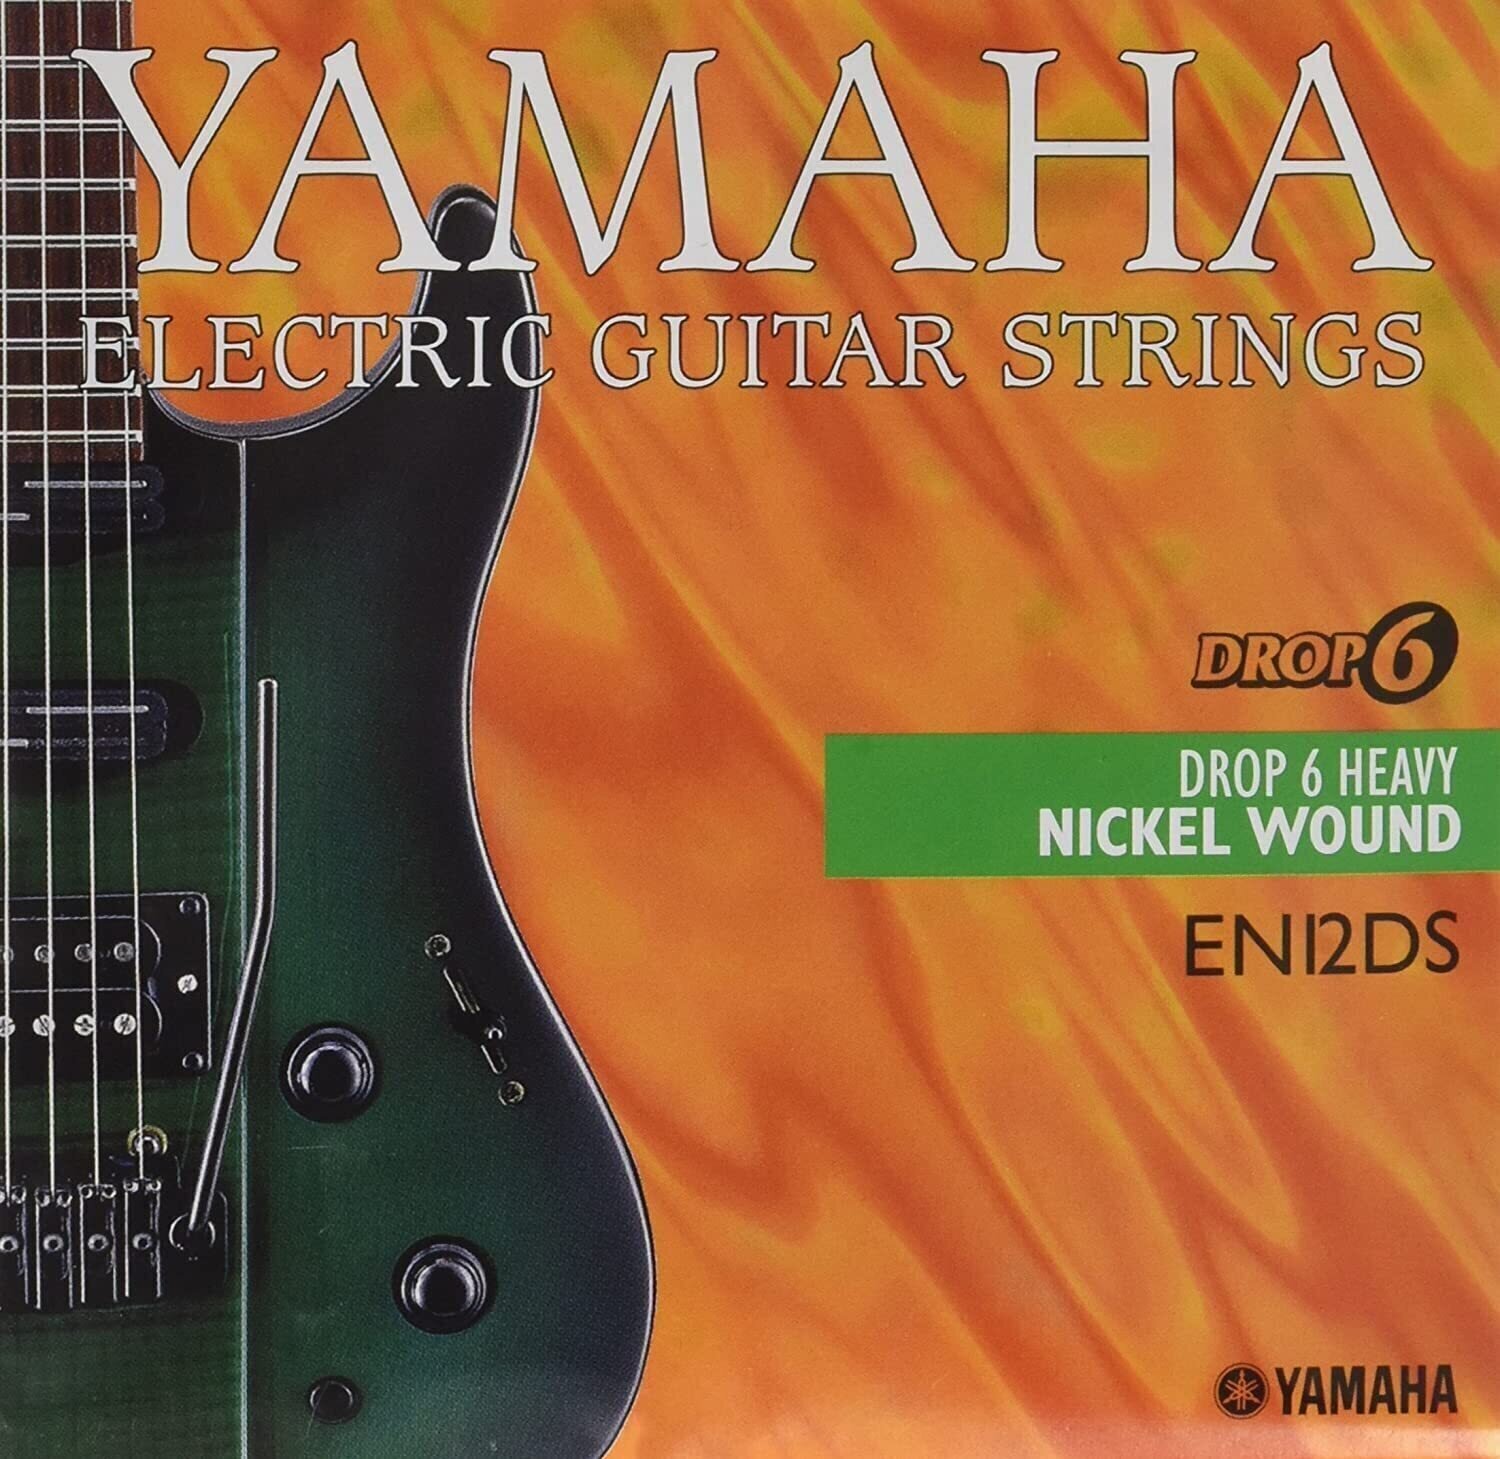 Struny pro elektrickou kytaru Yamaha EN 12 DS